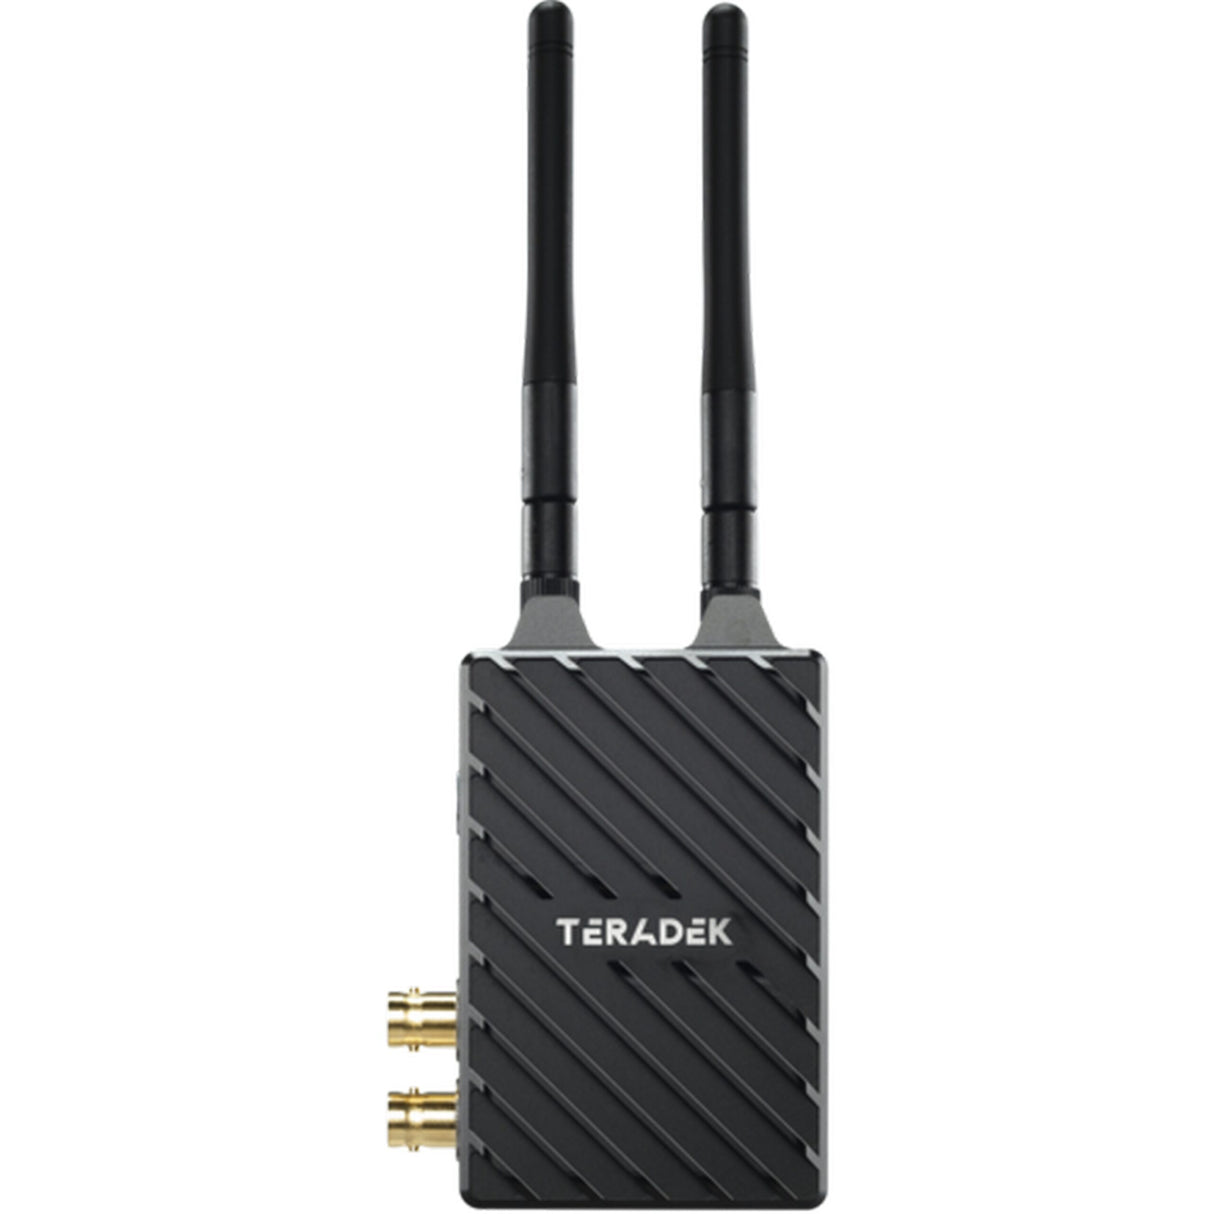 Teradek Bolt 4K LT 750 Wireless Video Transmitter